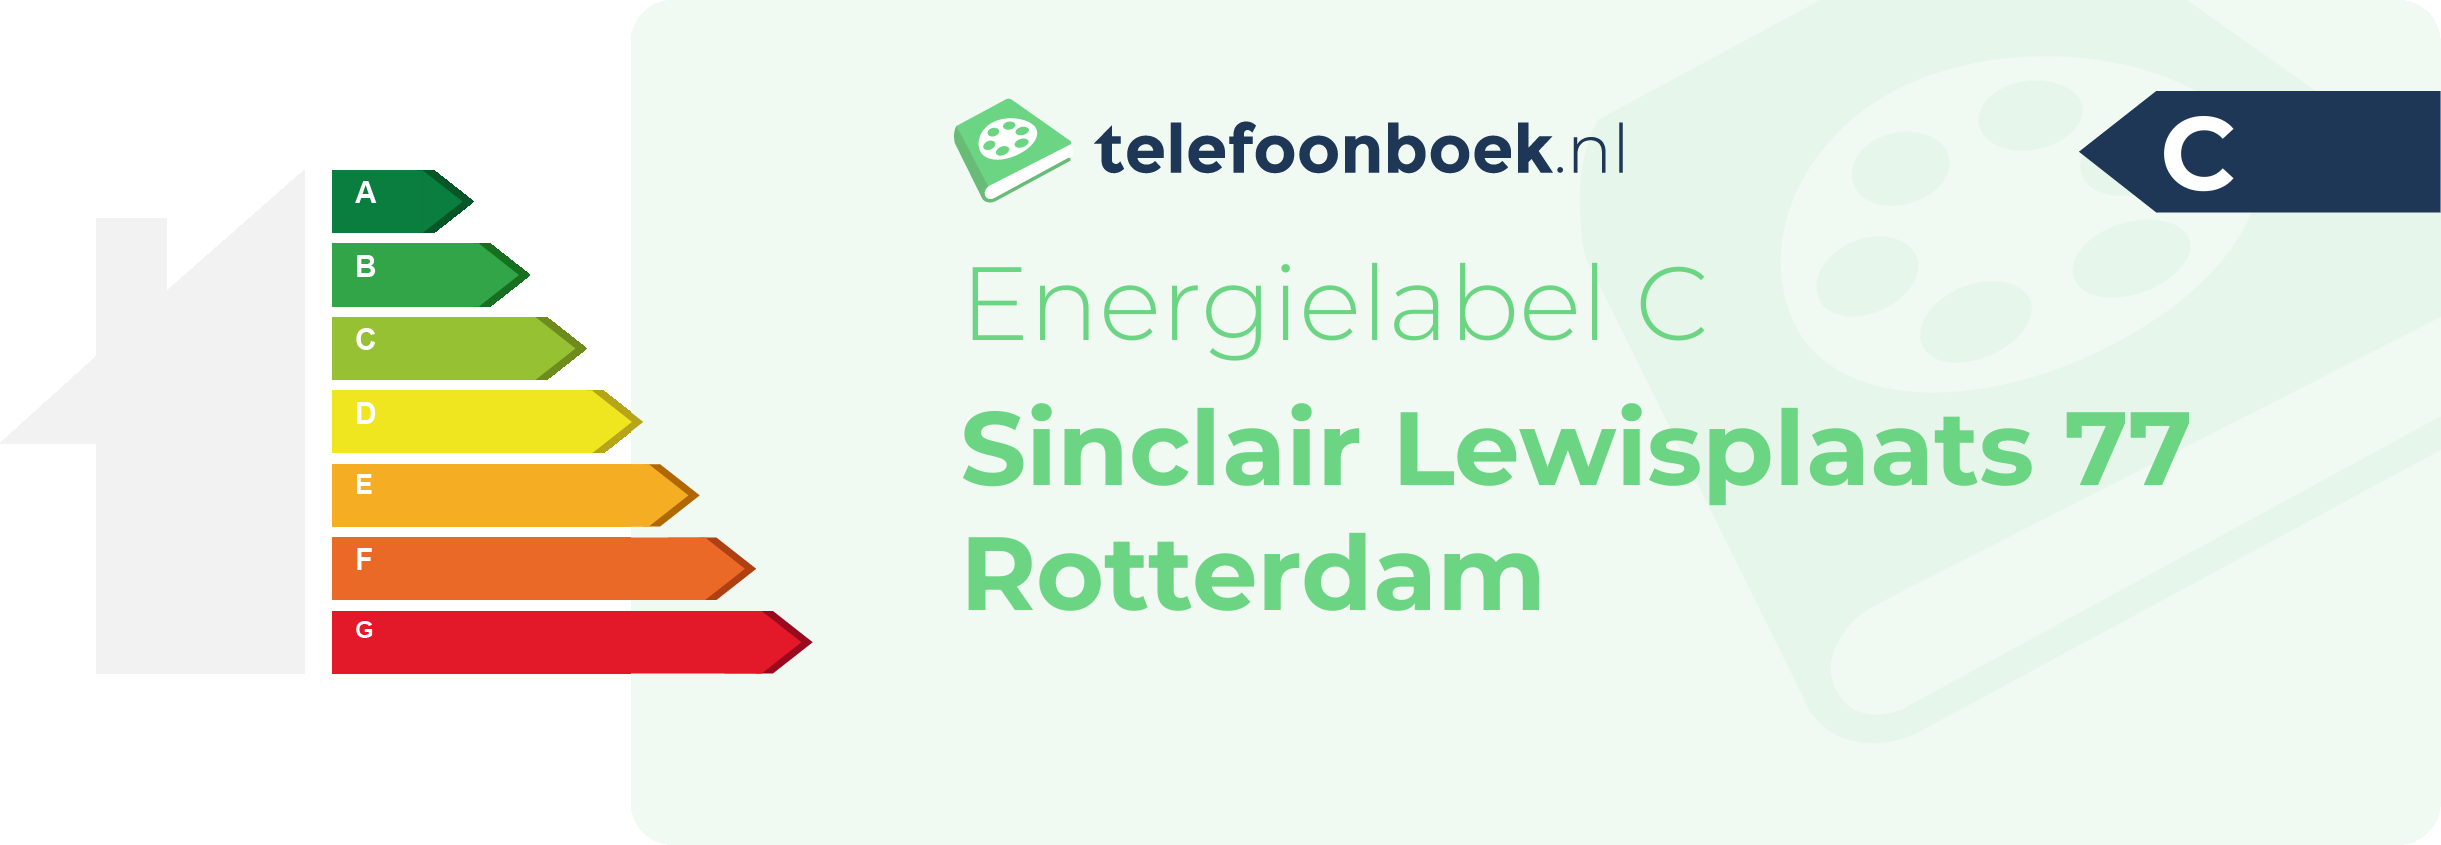 Energielabel Sinclair Lewisplaats 77 Rotterdam